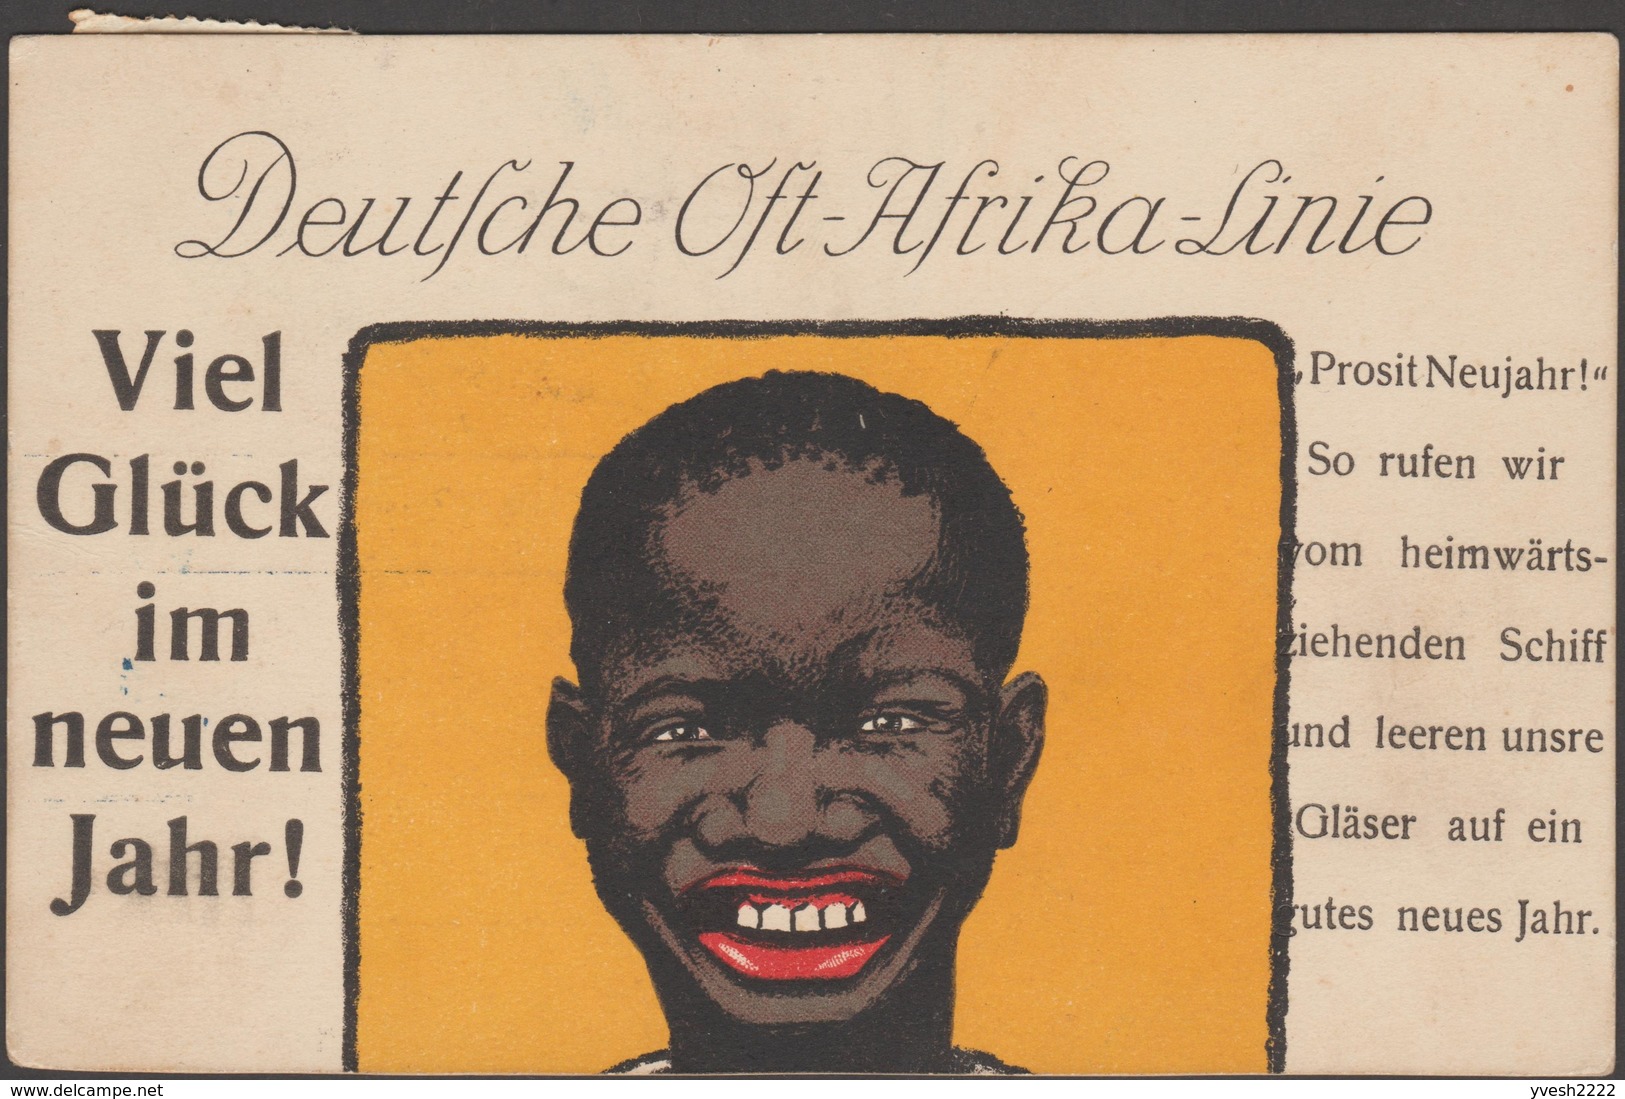 Lourenço Marques 1913. Carte Postale Taxée Pour L'Allemagne. Deutsche Ost-Afrika-Linie - Mozambique